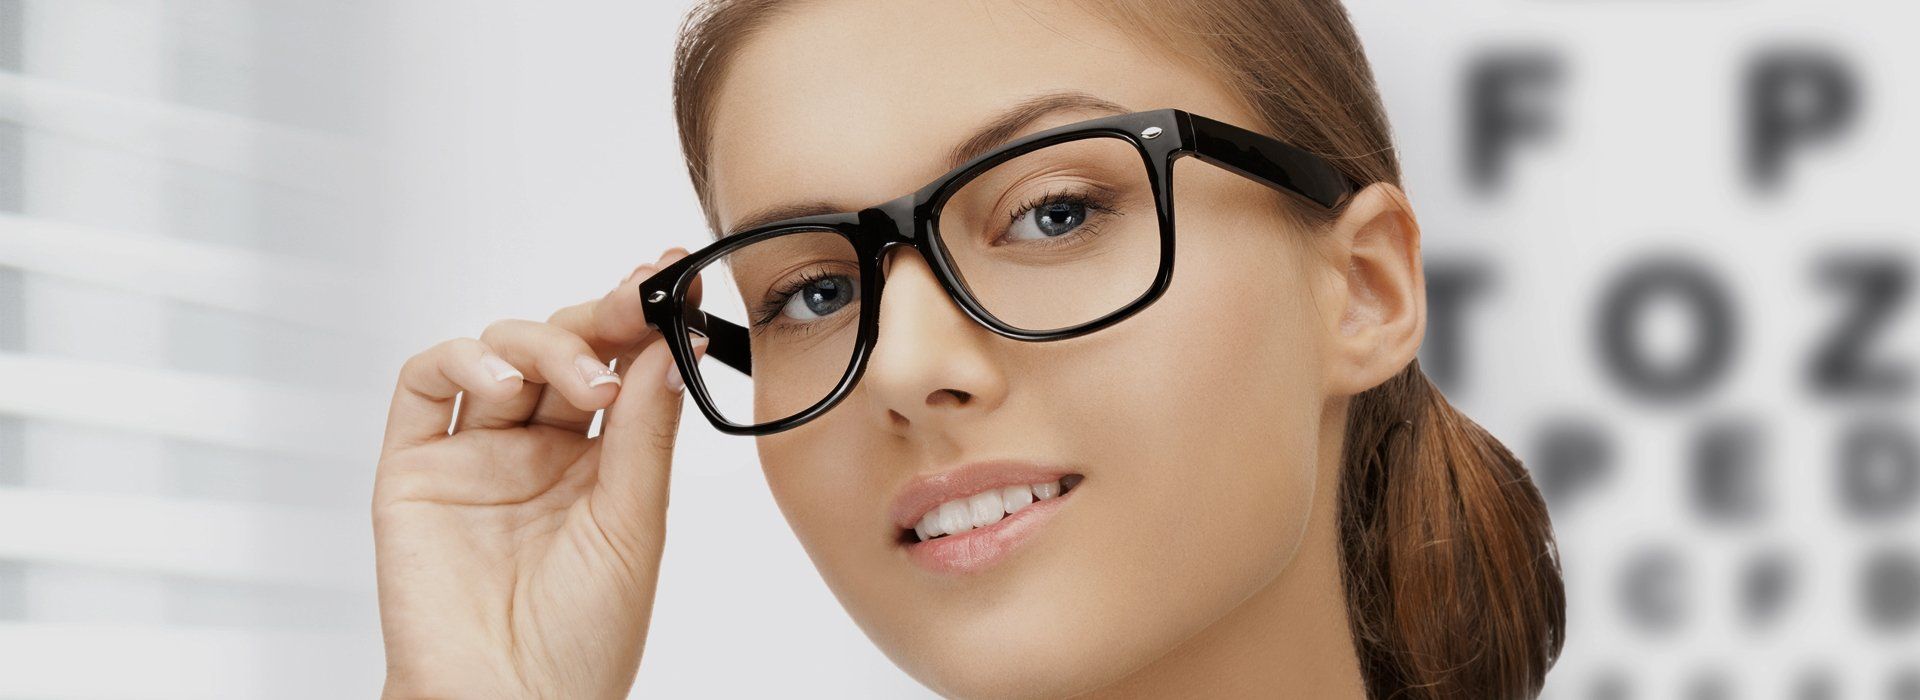 Девушка в очках реклама